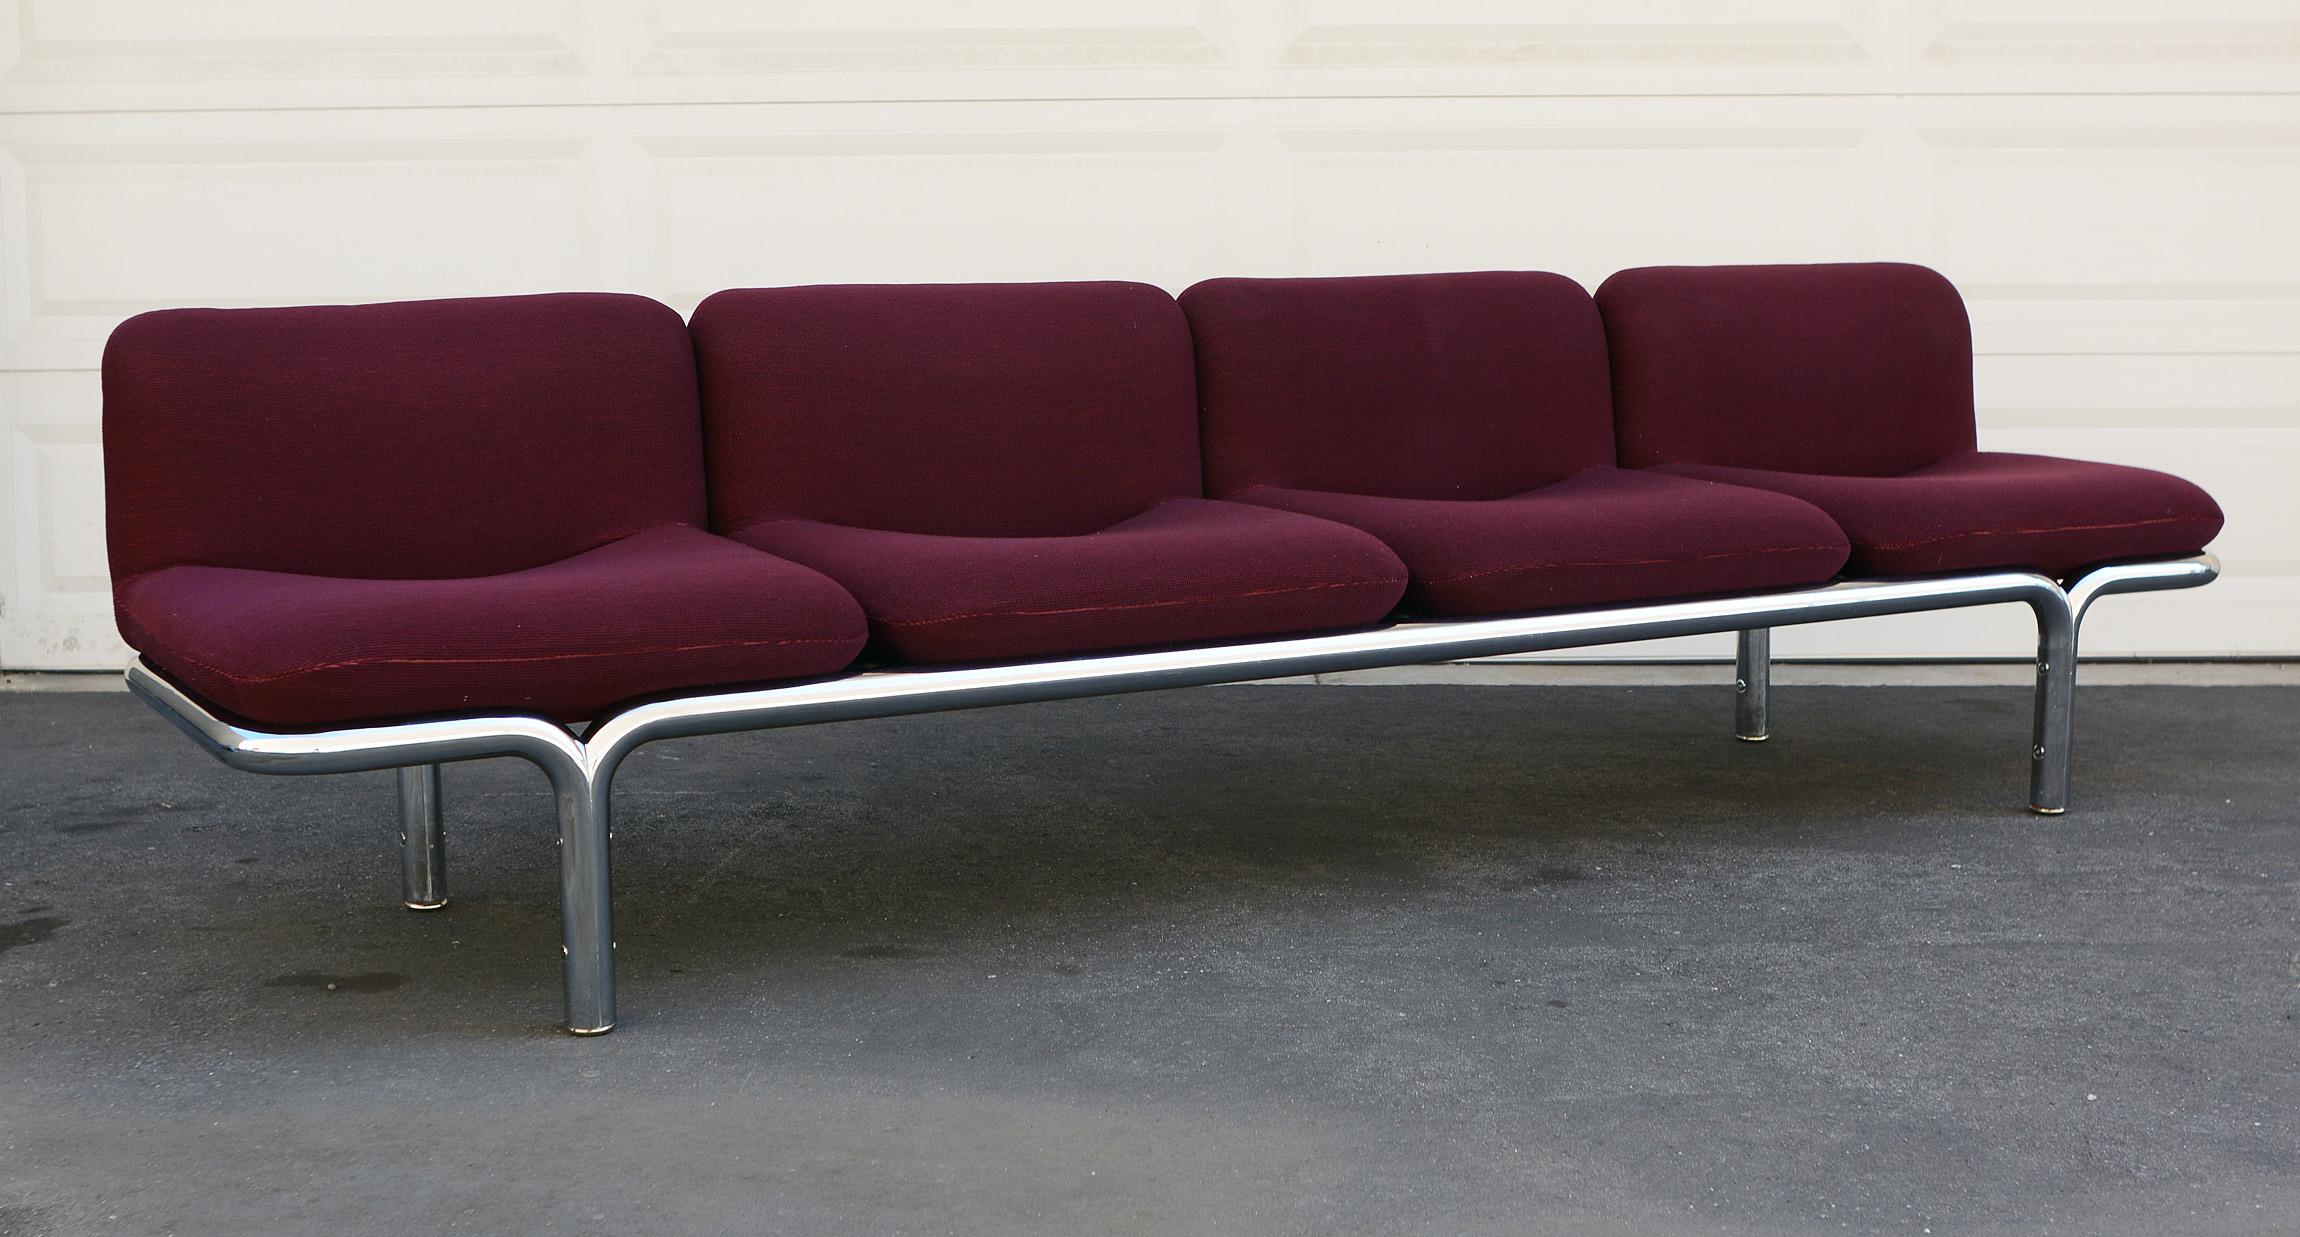 American Four-Seat Chrome Tubular Sofa by Brian Kane for Metropolitan